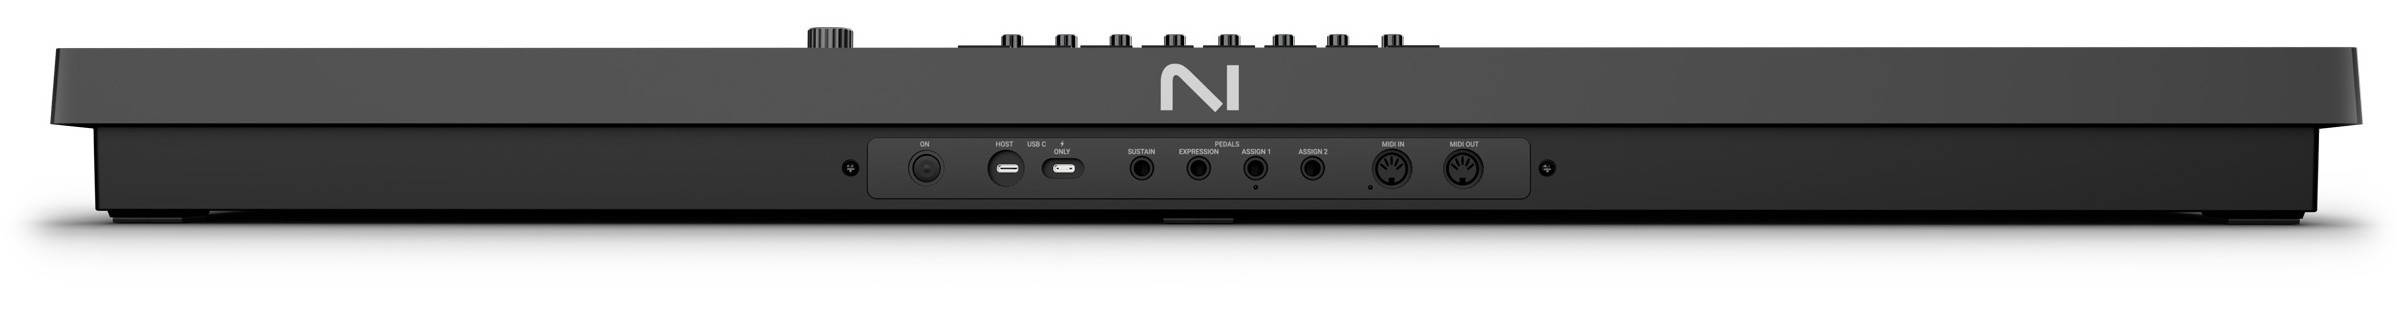 Komplete Kontrol S49 MK3 ofrece una variedad de opciones de conectividad, incluyendo USB, MIDI, alimentación por bus USB-C y entradas para pedal de sustain, expresión y dos asignables